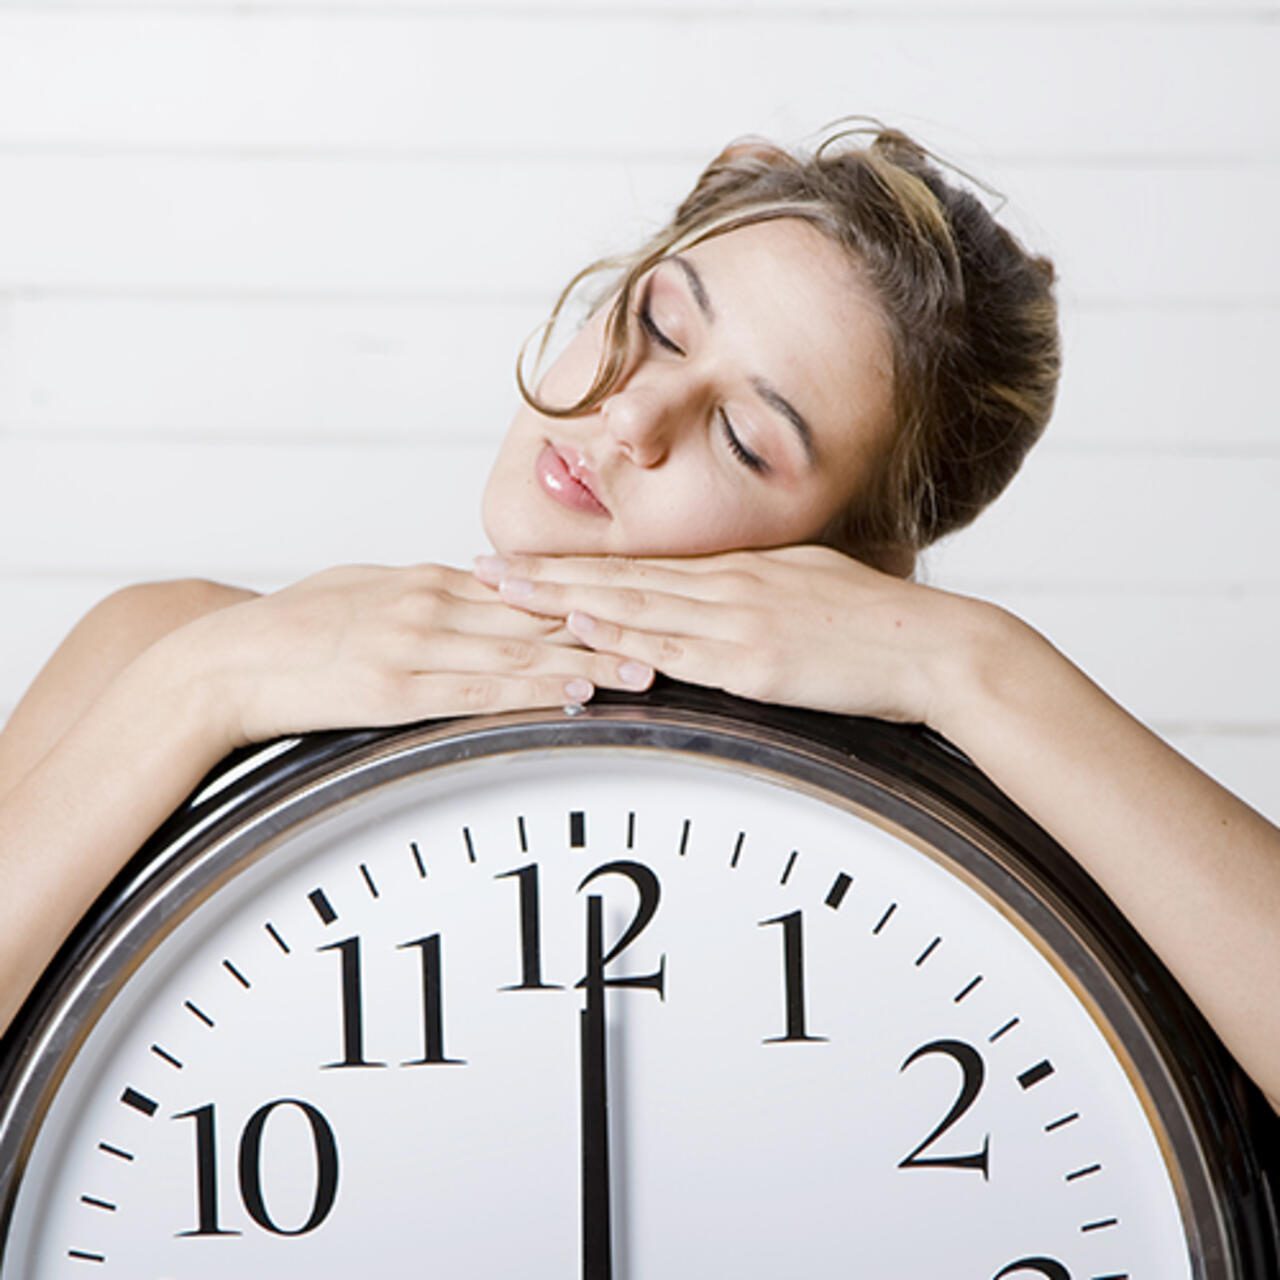 Los ritmos circadianos influyen en nuestro bienestar5